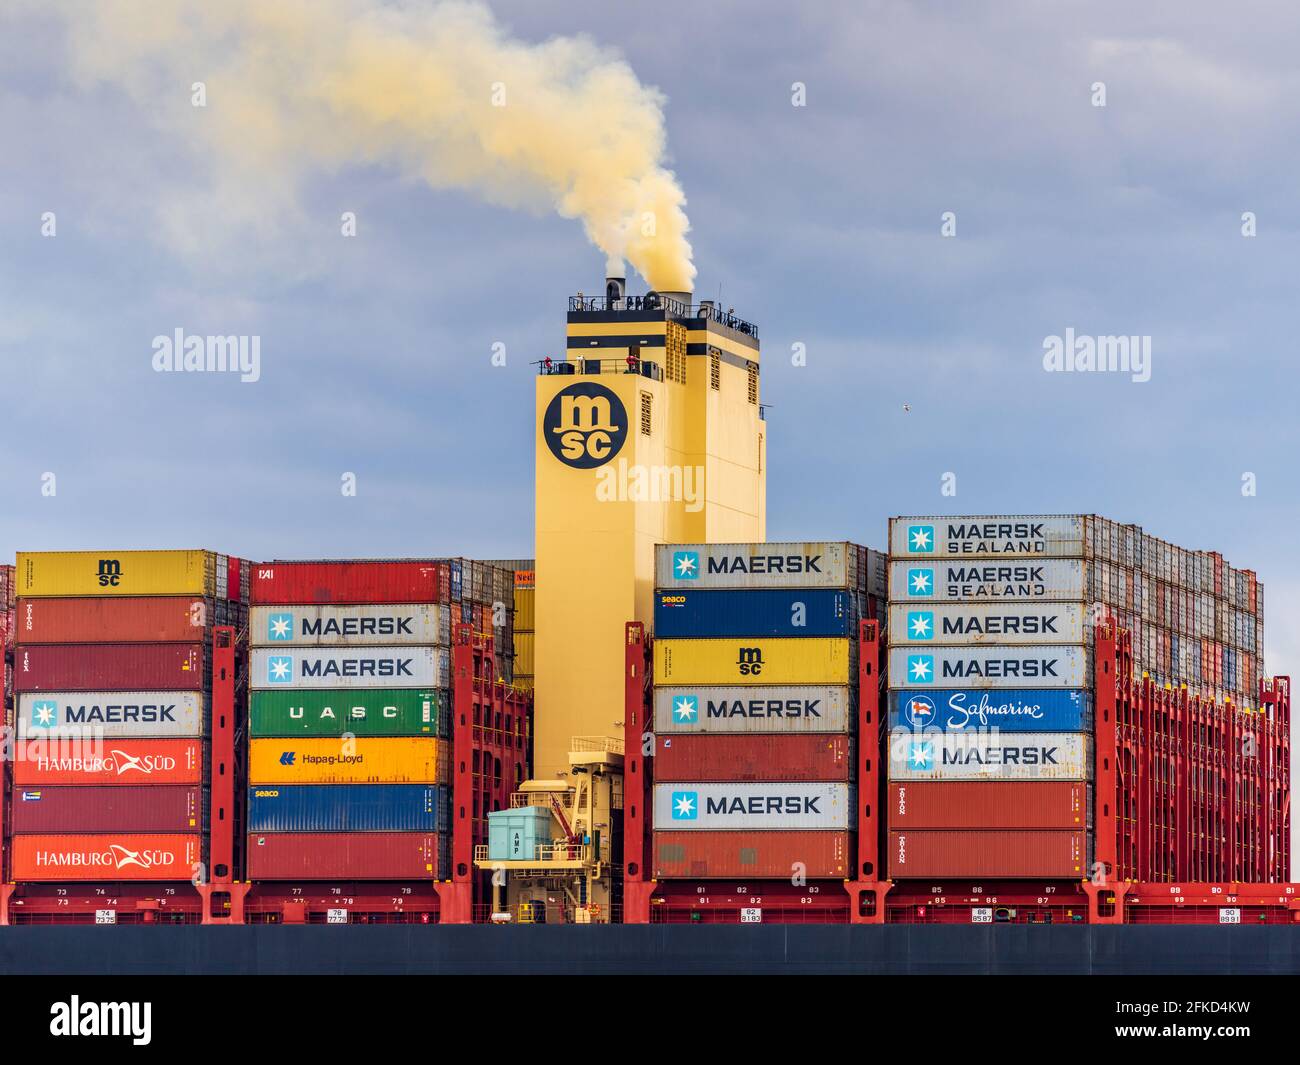 Stickstoffoxid-Verschmutzung durch die Schifffahrt - Schiffsauslass - Verschmutzung durch Containerschiffe - NOx-Emissionen Stickstoffoxid reich Gelber Rauchtrichter Stockfoto